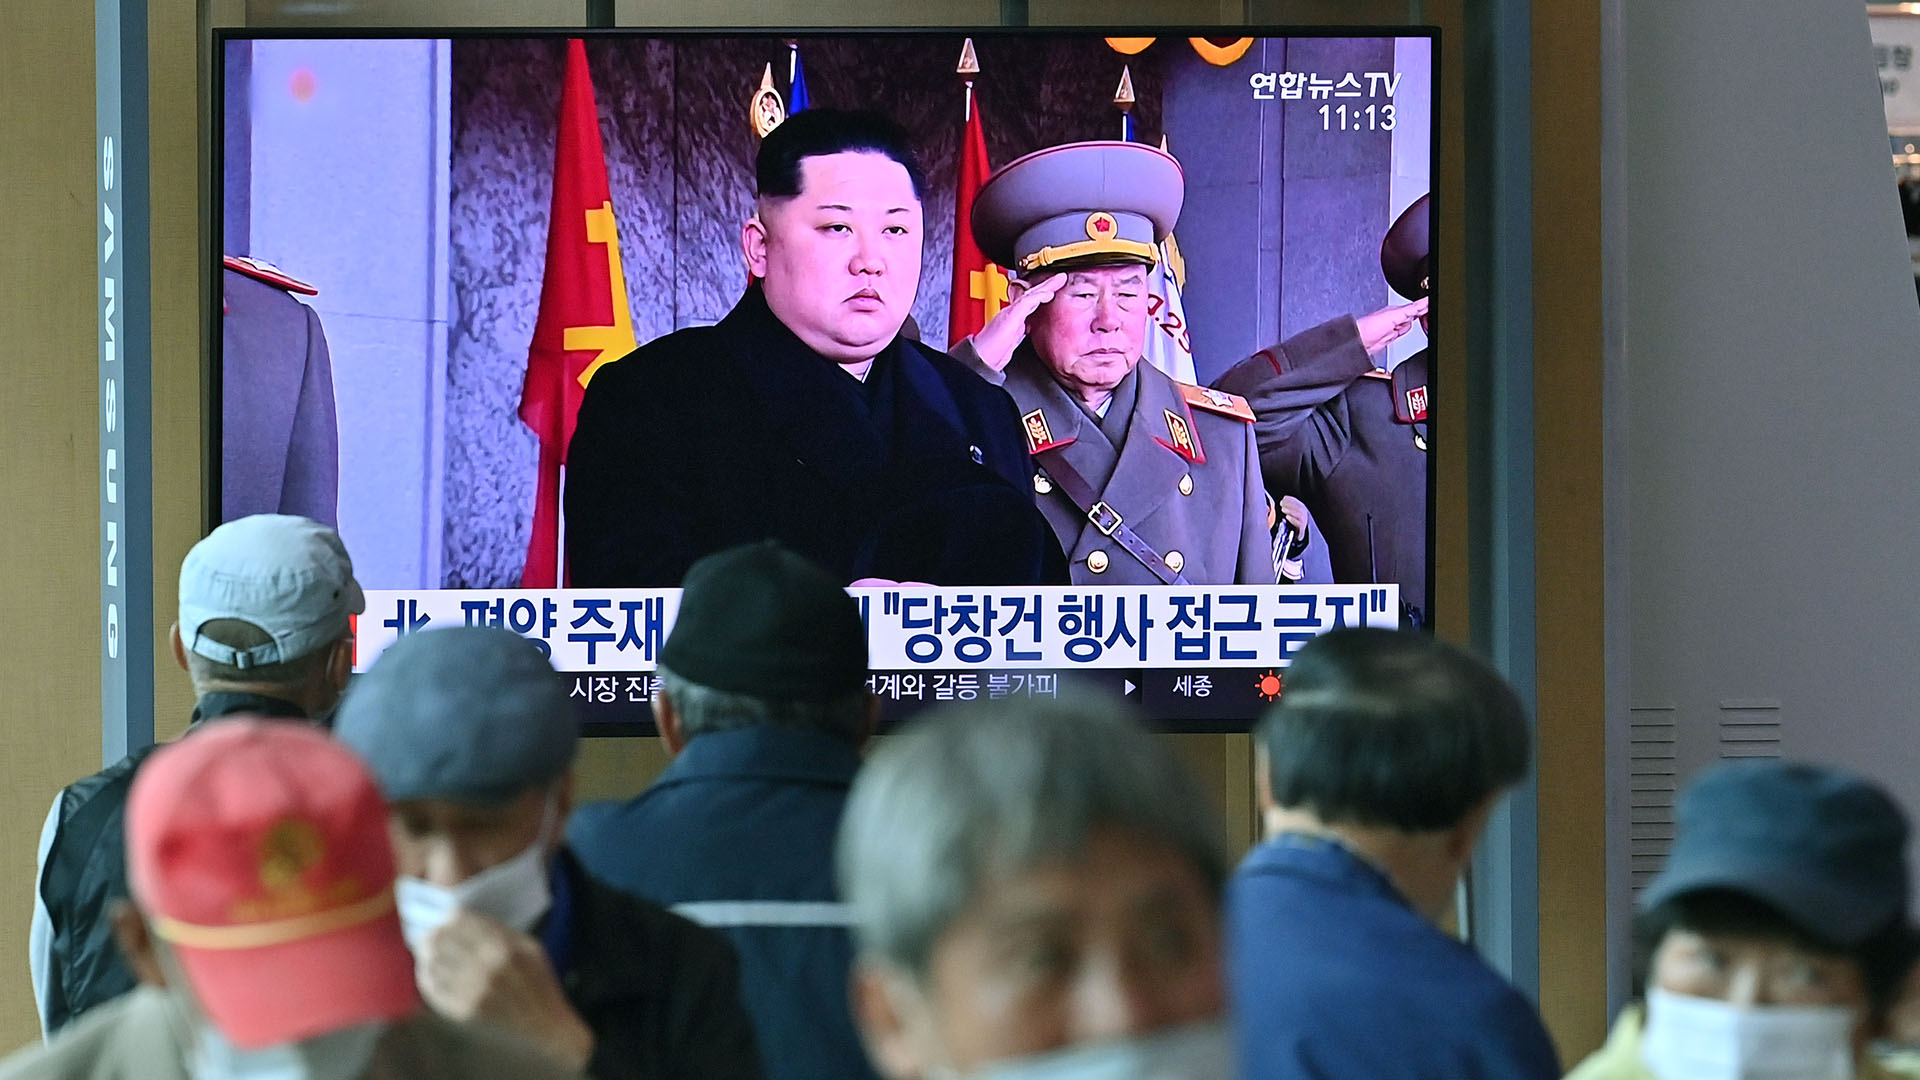 El noticiero transmite imágenes del líder de Corea del Norte, Kim Jong-un. (Foto de Jung Yeon-je / AFP)